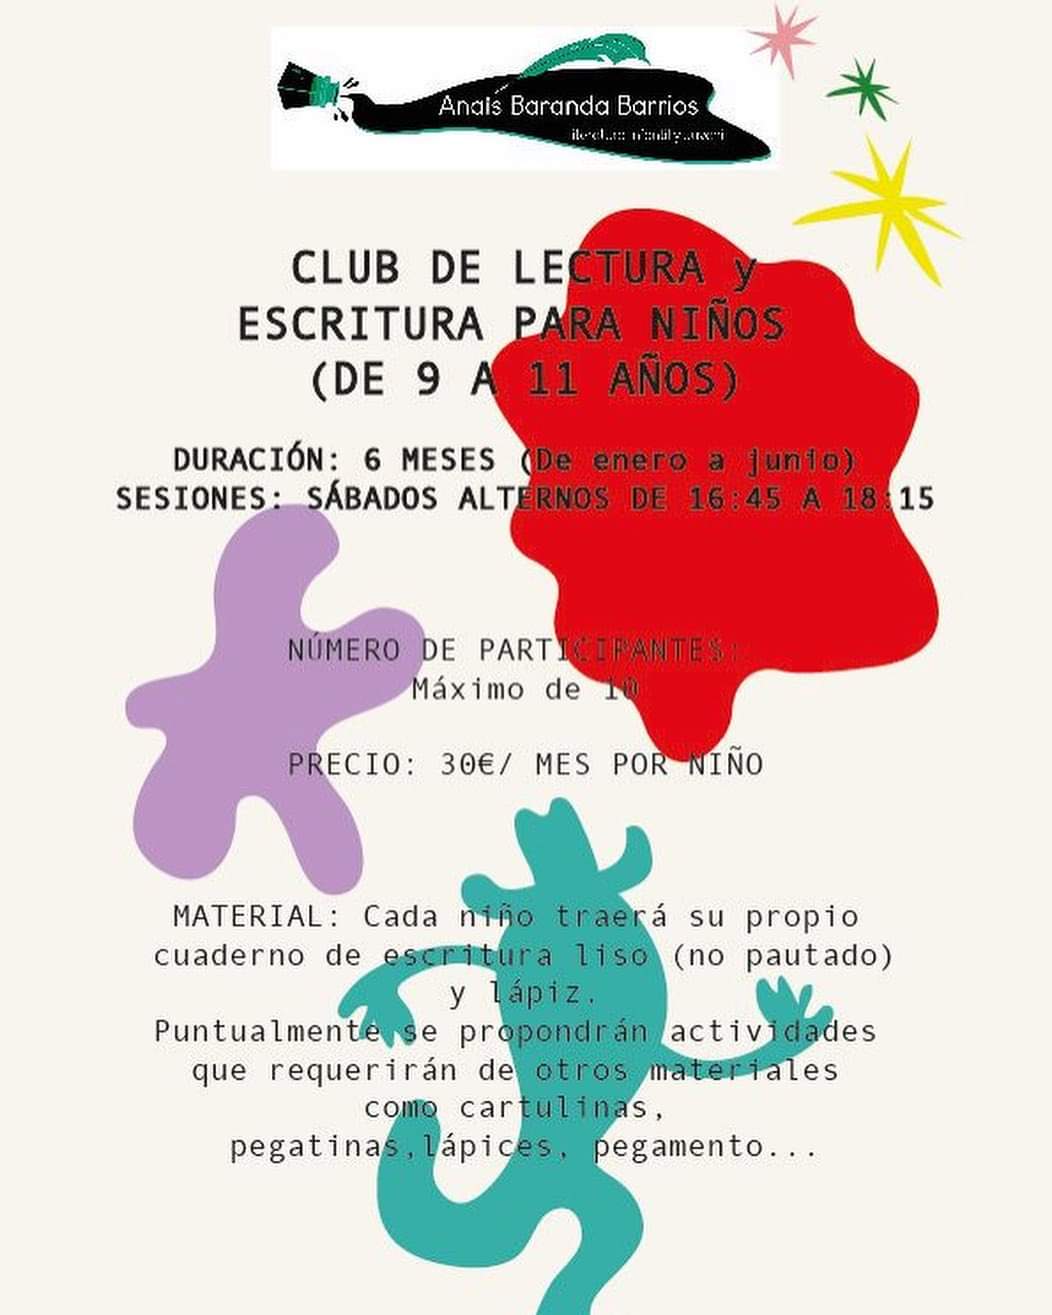 Club de Lectura y Escritura para niños en los Libros Salvajes ⋆ Anaïs  Baranda Barrios